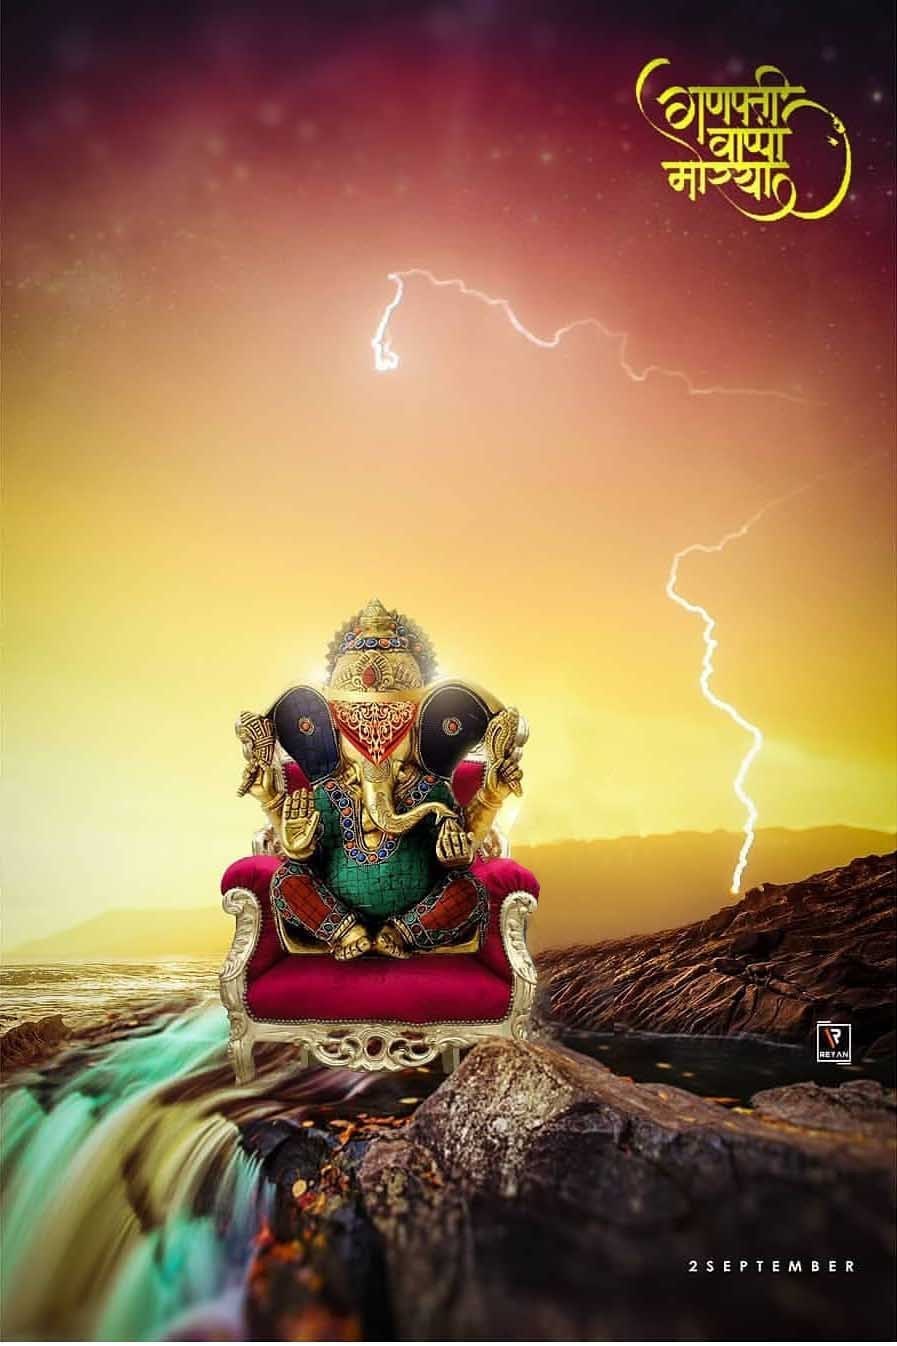 Ganesh chaturthi backgrounds| Ganesh chaturthi banner| Ganesh chaturthi background  picsart editing - LEARNINGWITHSR